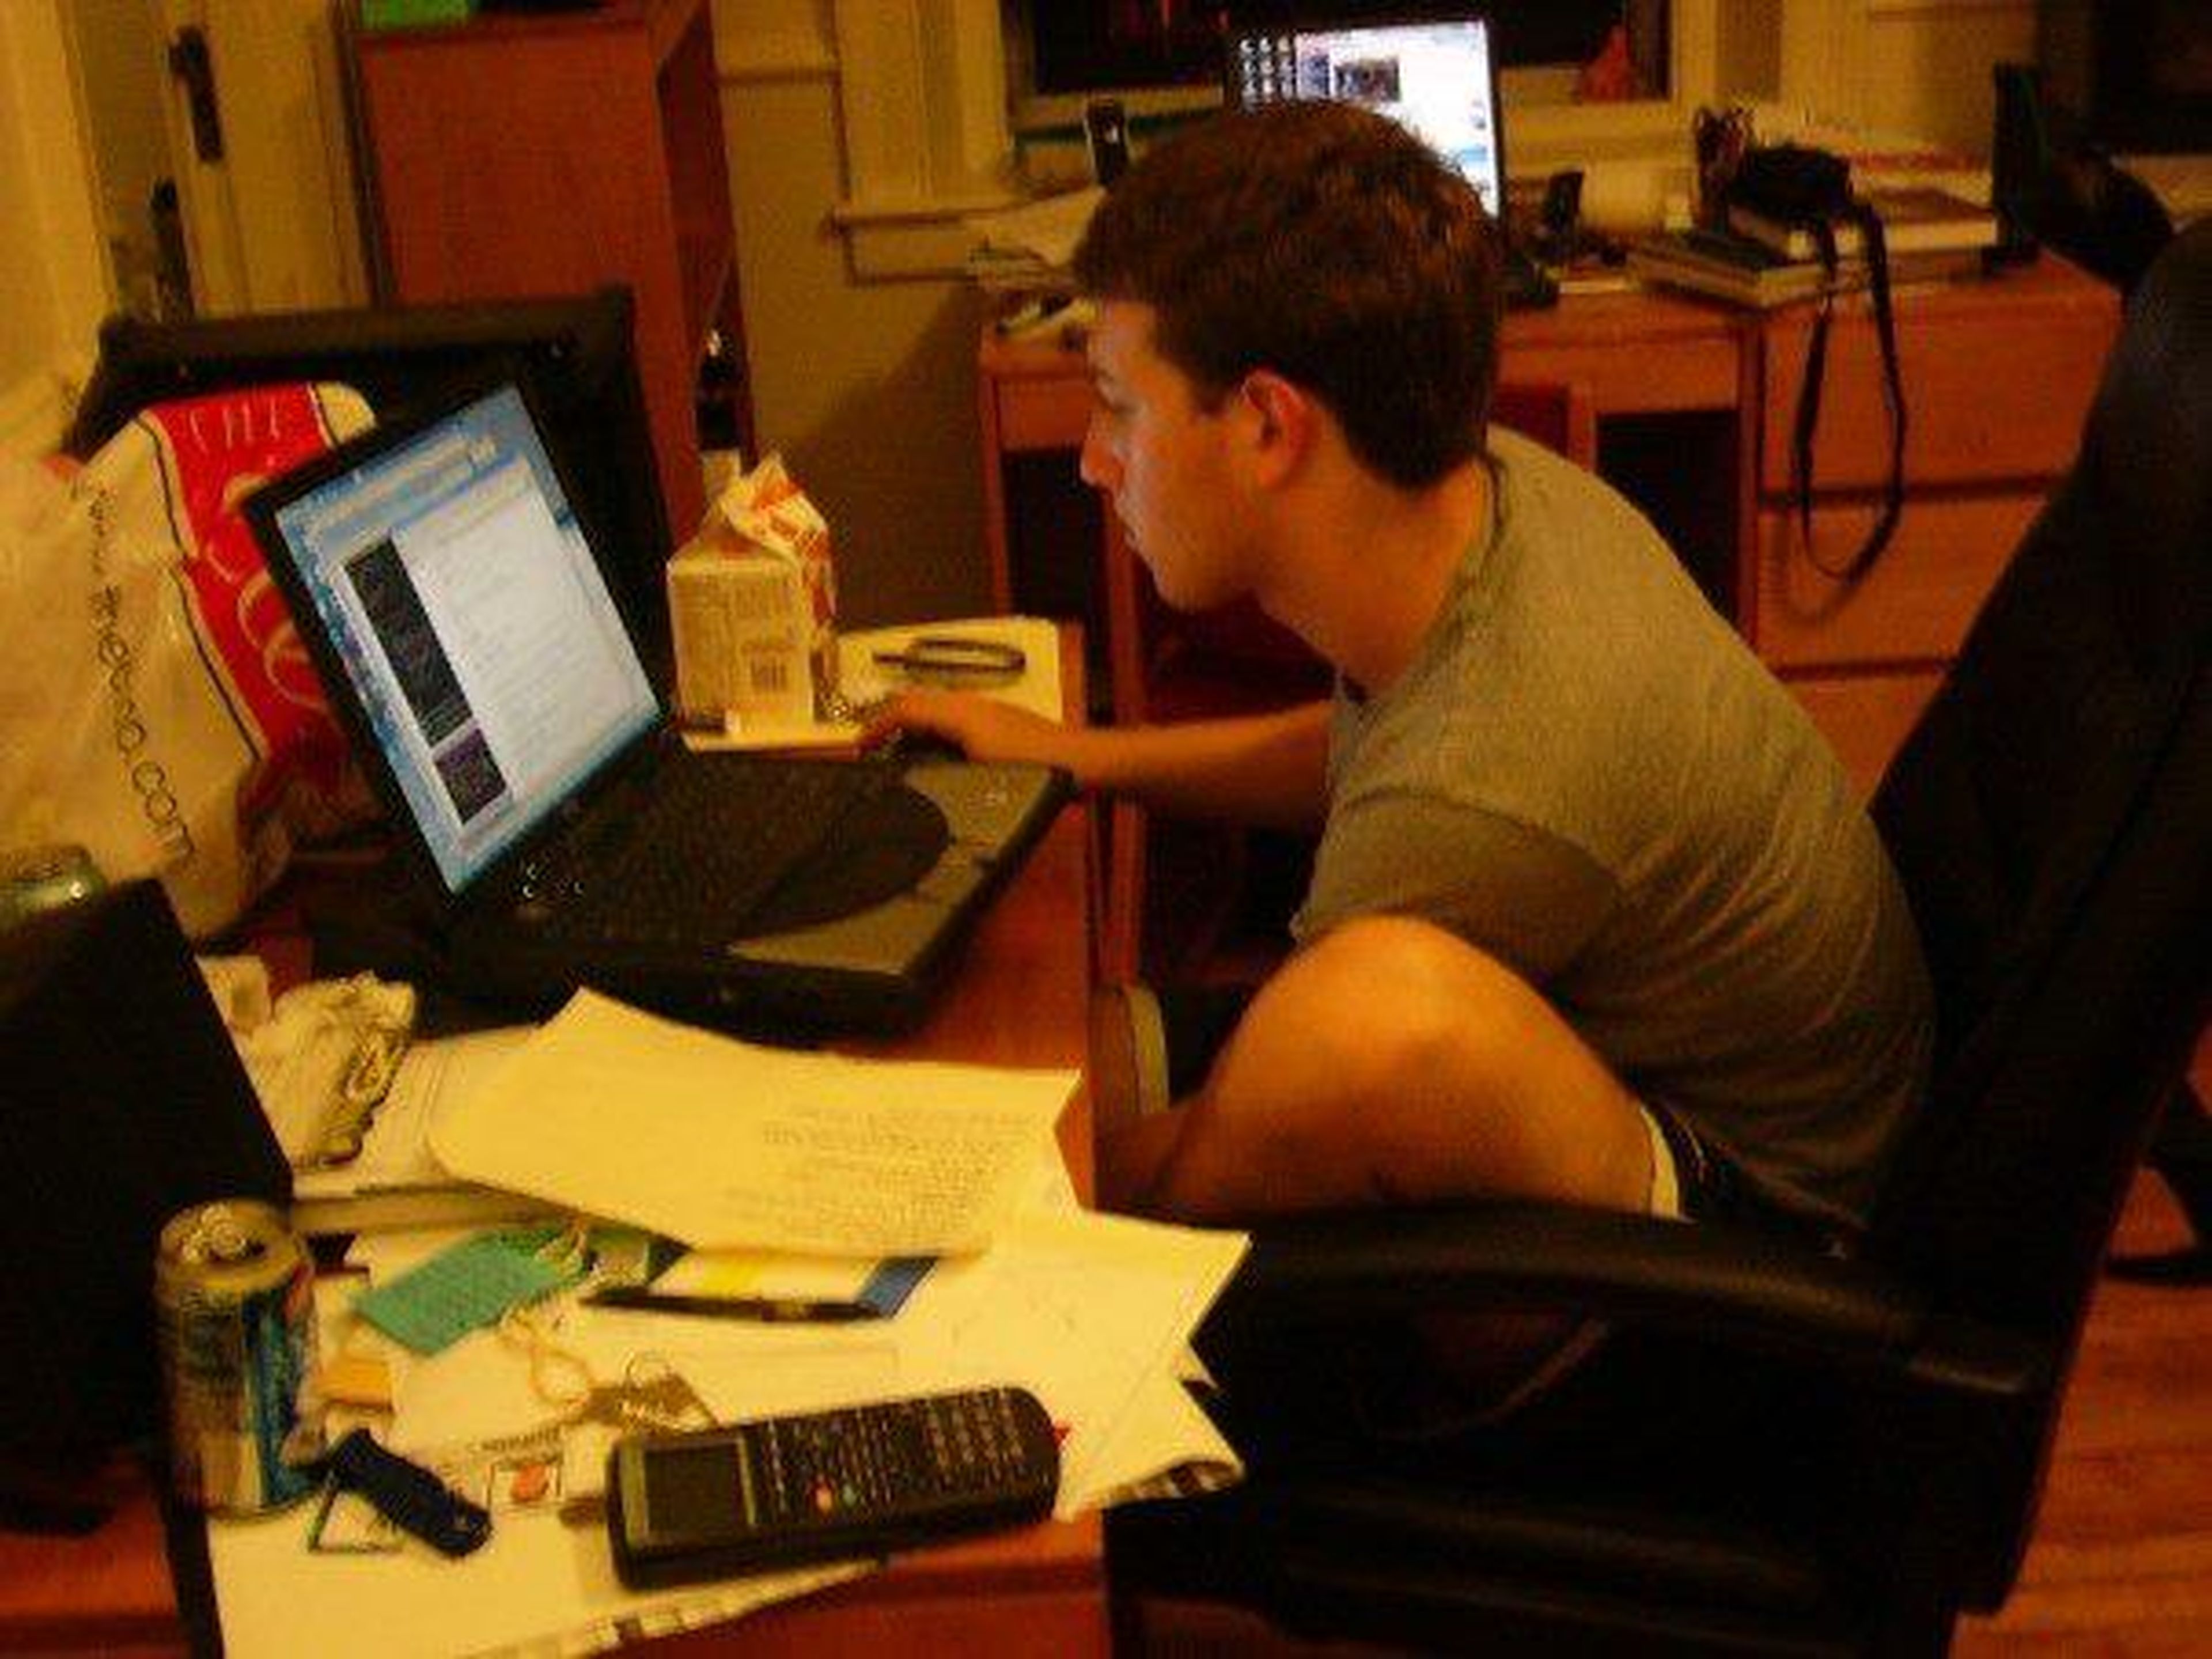 En 2003, Mark Zuckerberg, que por aquél entonces era un estudiante de segundo año en Harvard, creó un sitio web llamado Facemash.